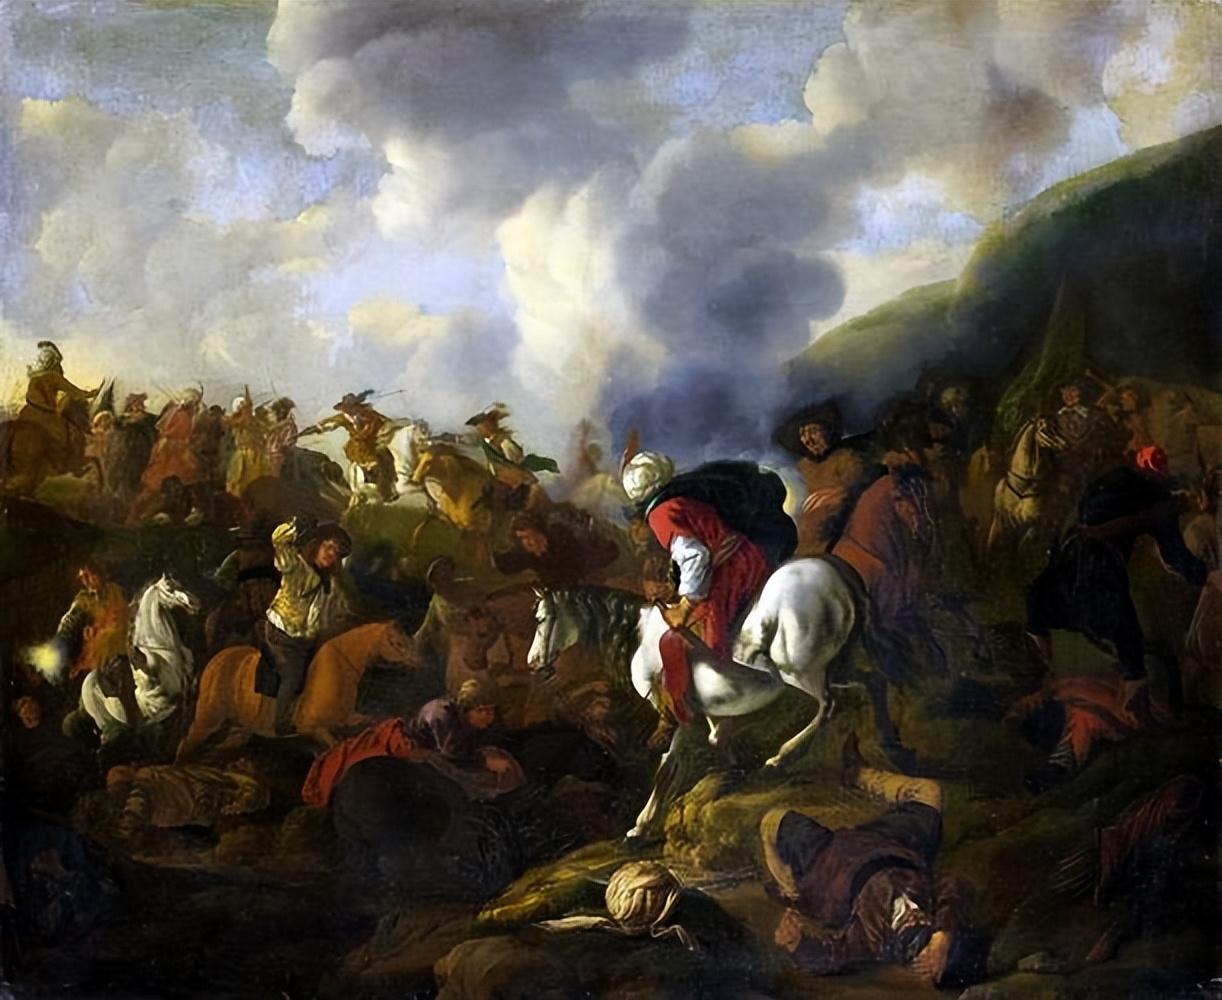 皇帝佩德罗二世对军队的管理并不严格,这使得军队在政治上获得了更多